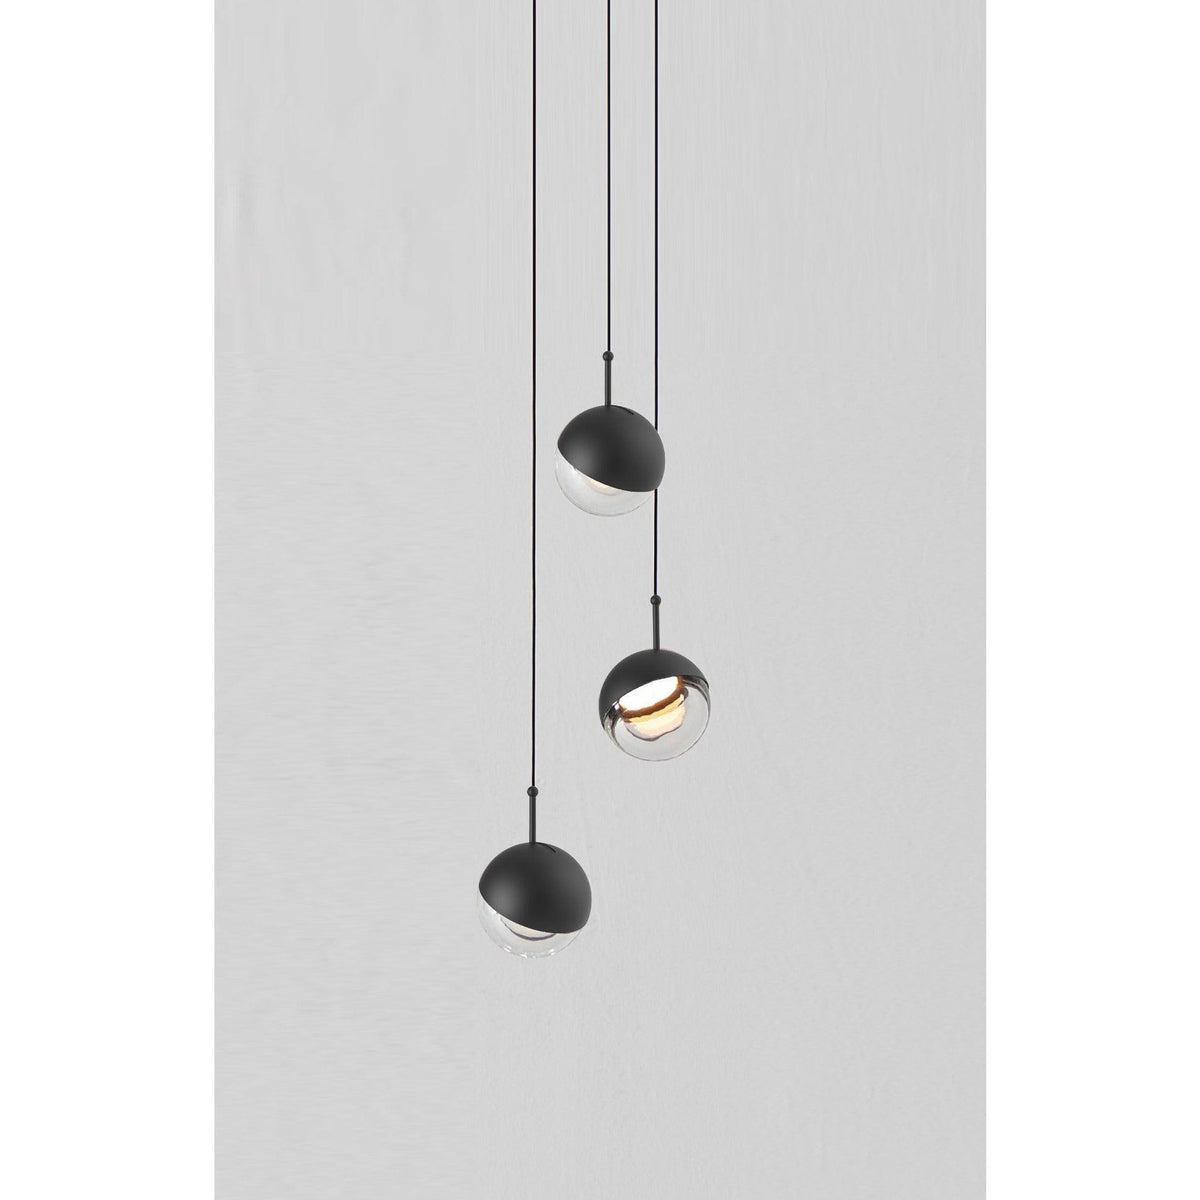 Seed Design - Dora Pendant Light 3 - SLD-1010P3-BK | Montreal Lighting & Hardware